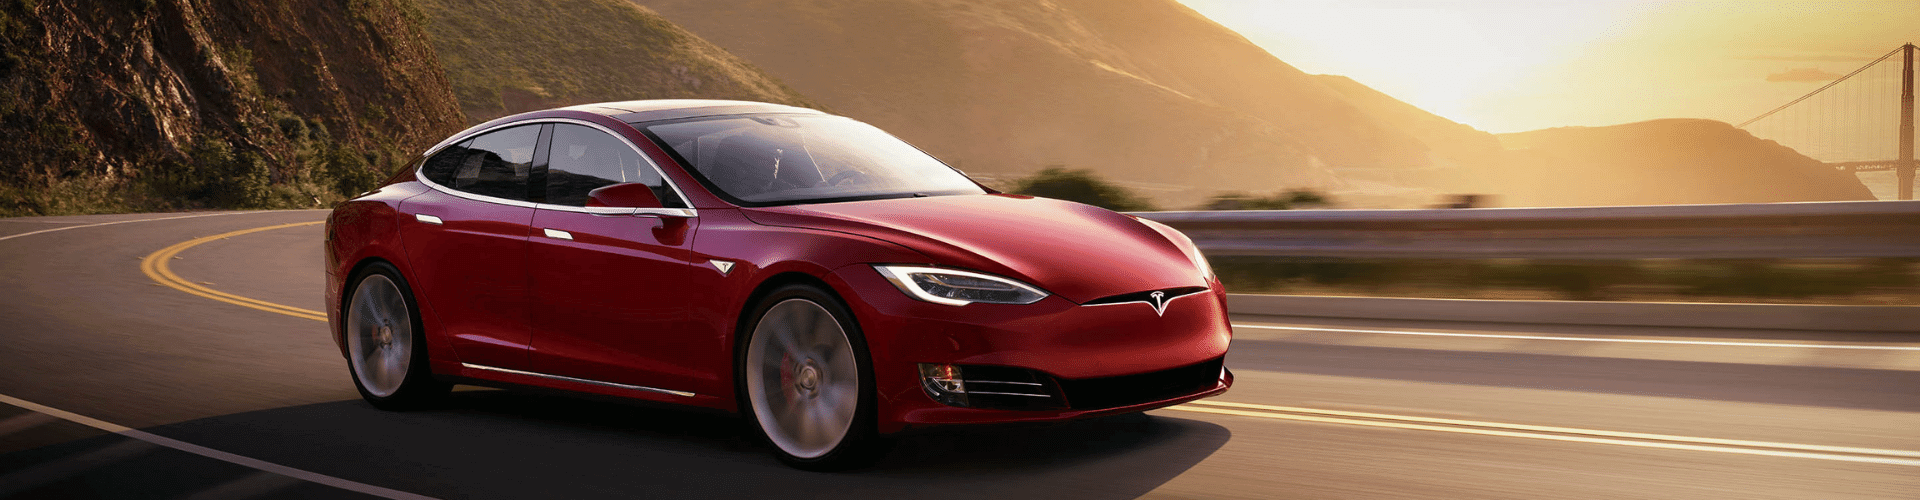 Tesla zakelijk leasen